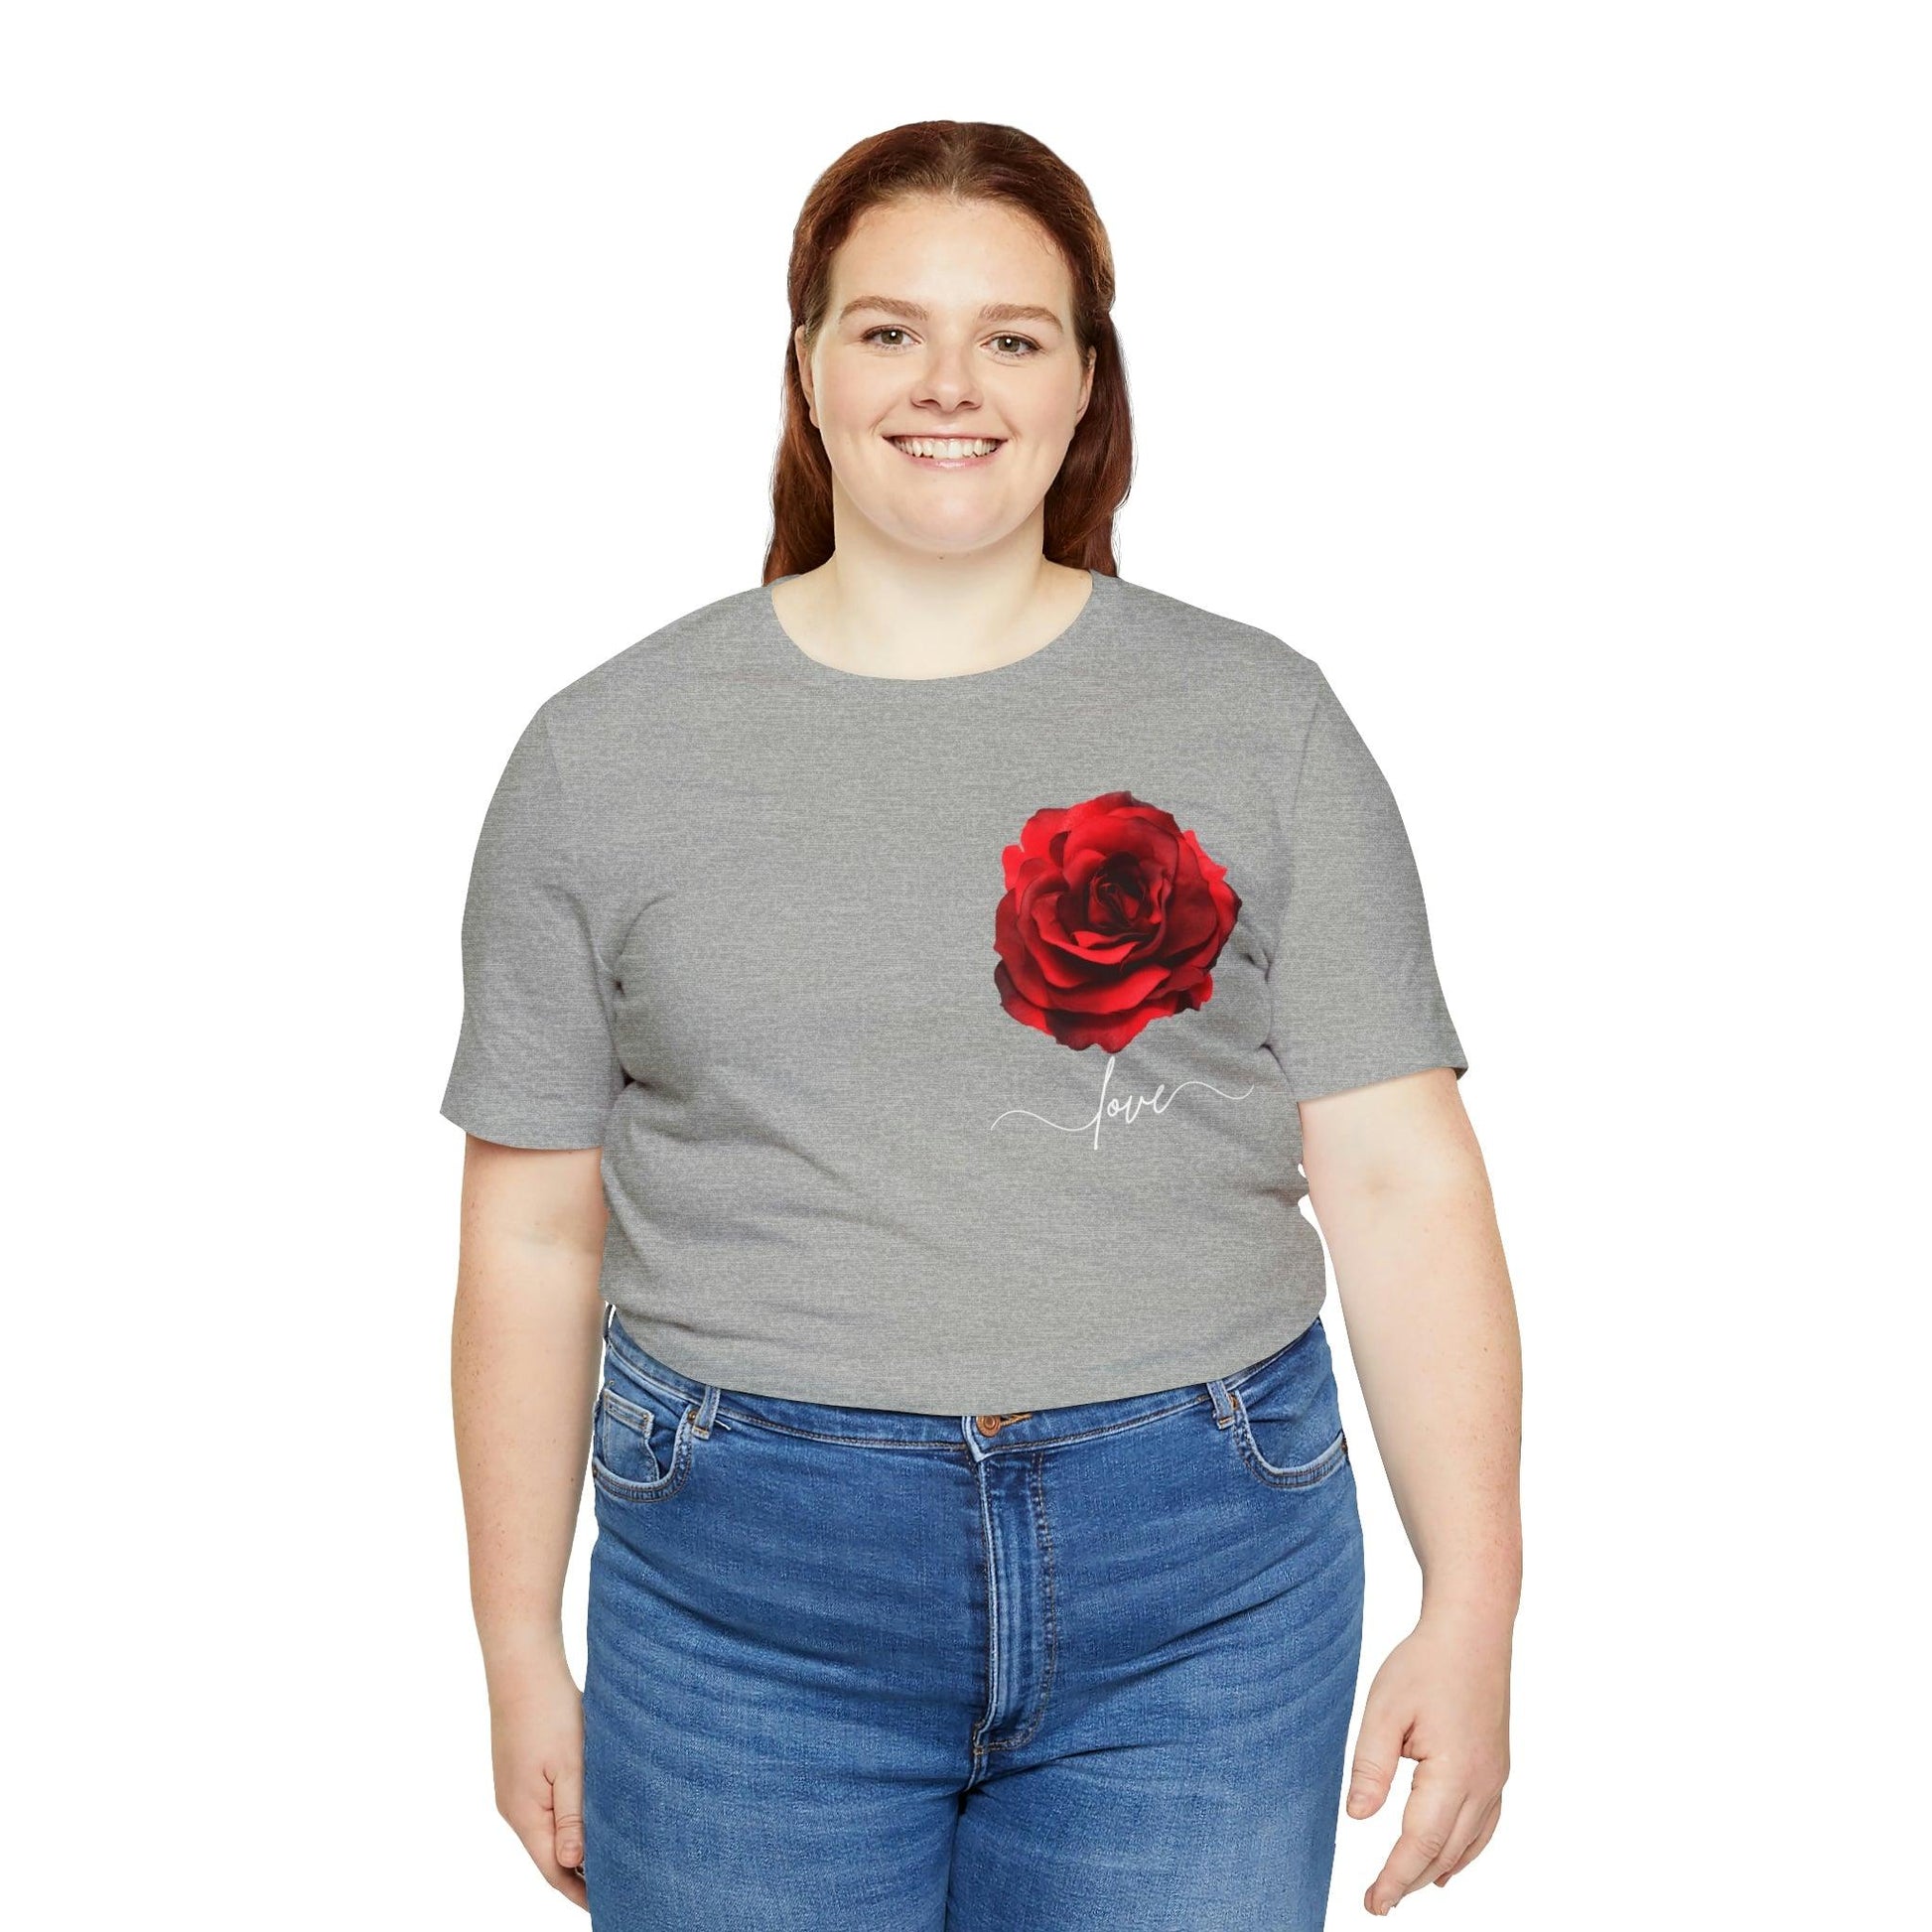 Love Rose Flower T-shirt for Women, Rose Graphic T-shirt, floral shirt, gift for her, love shirt - Giftsmojo